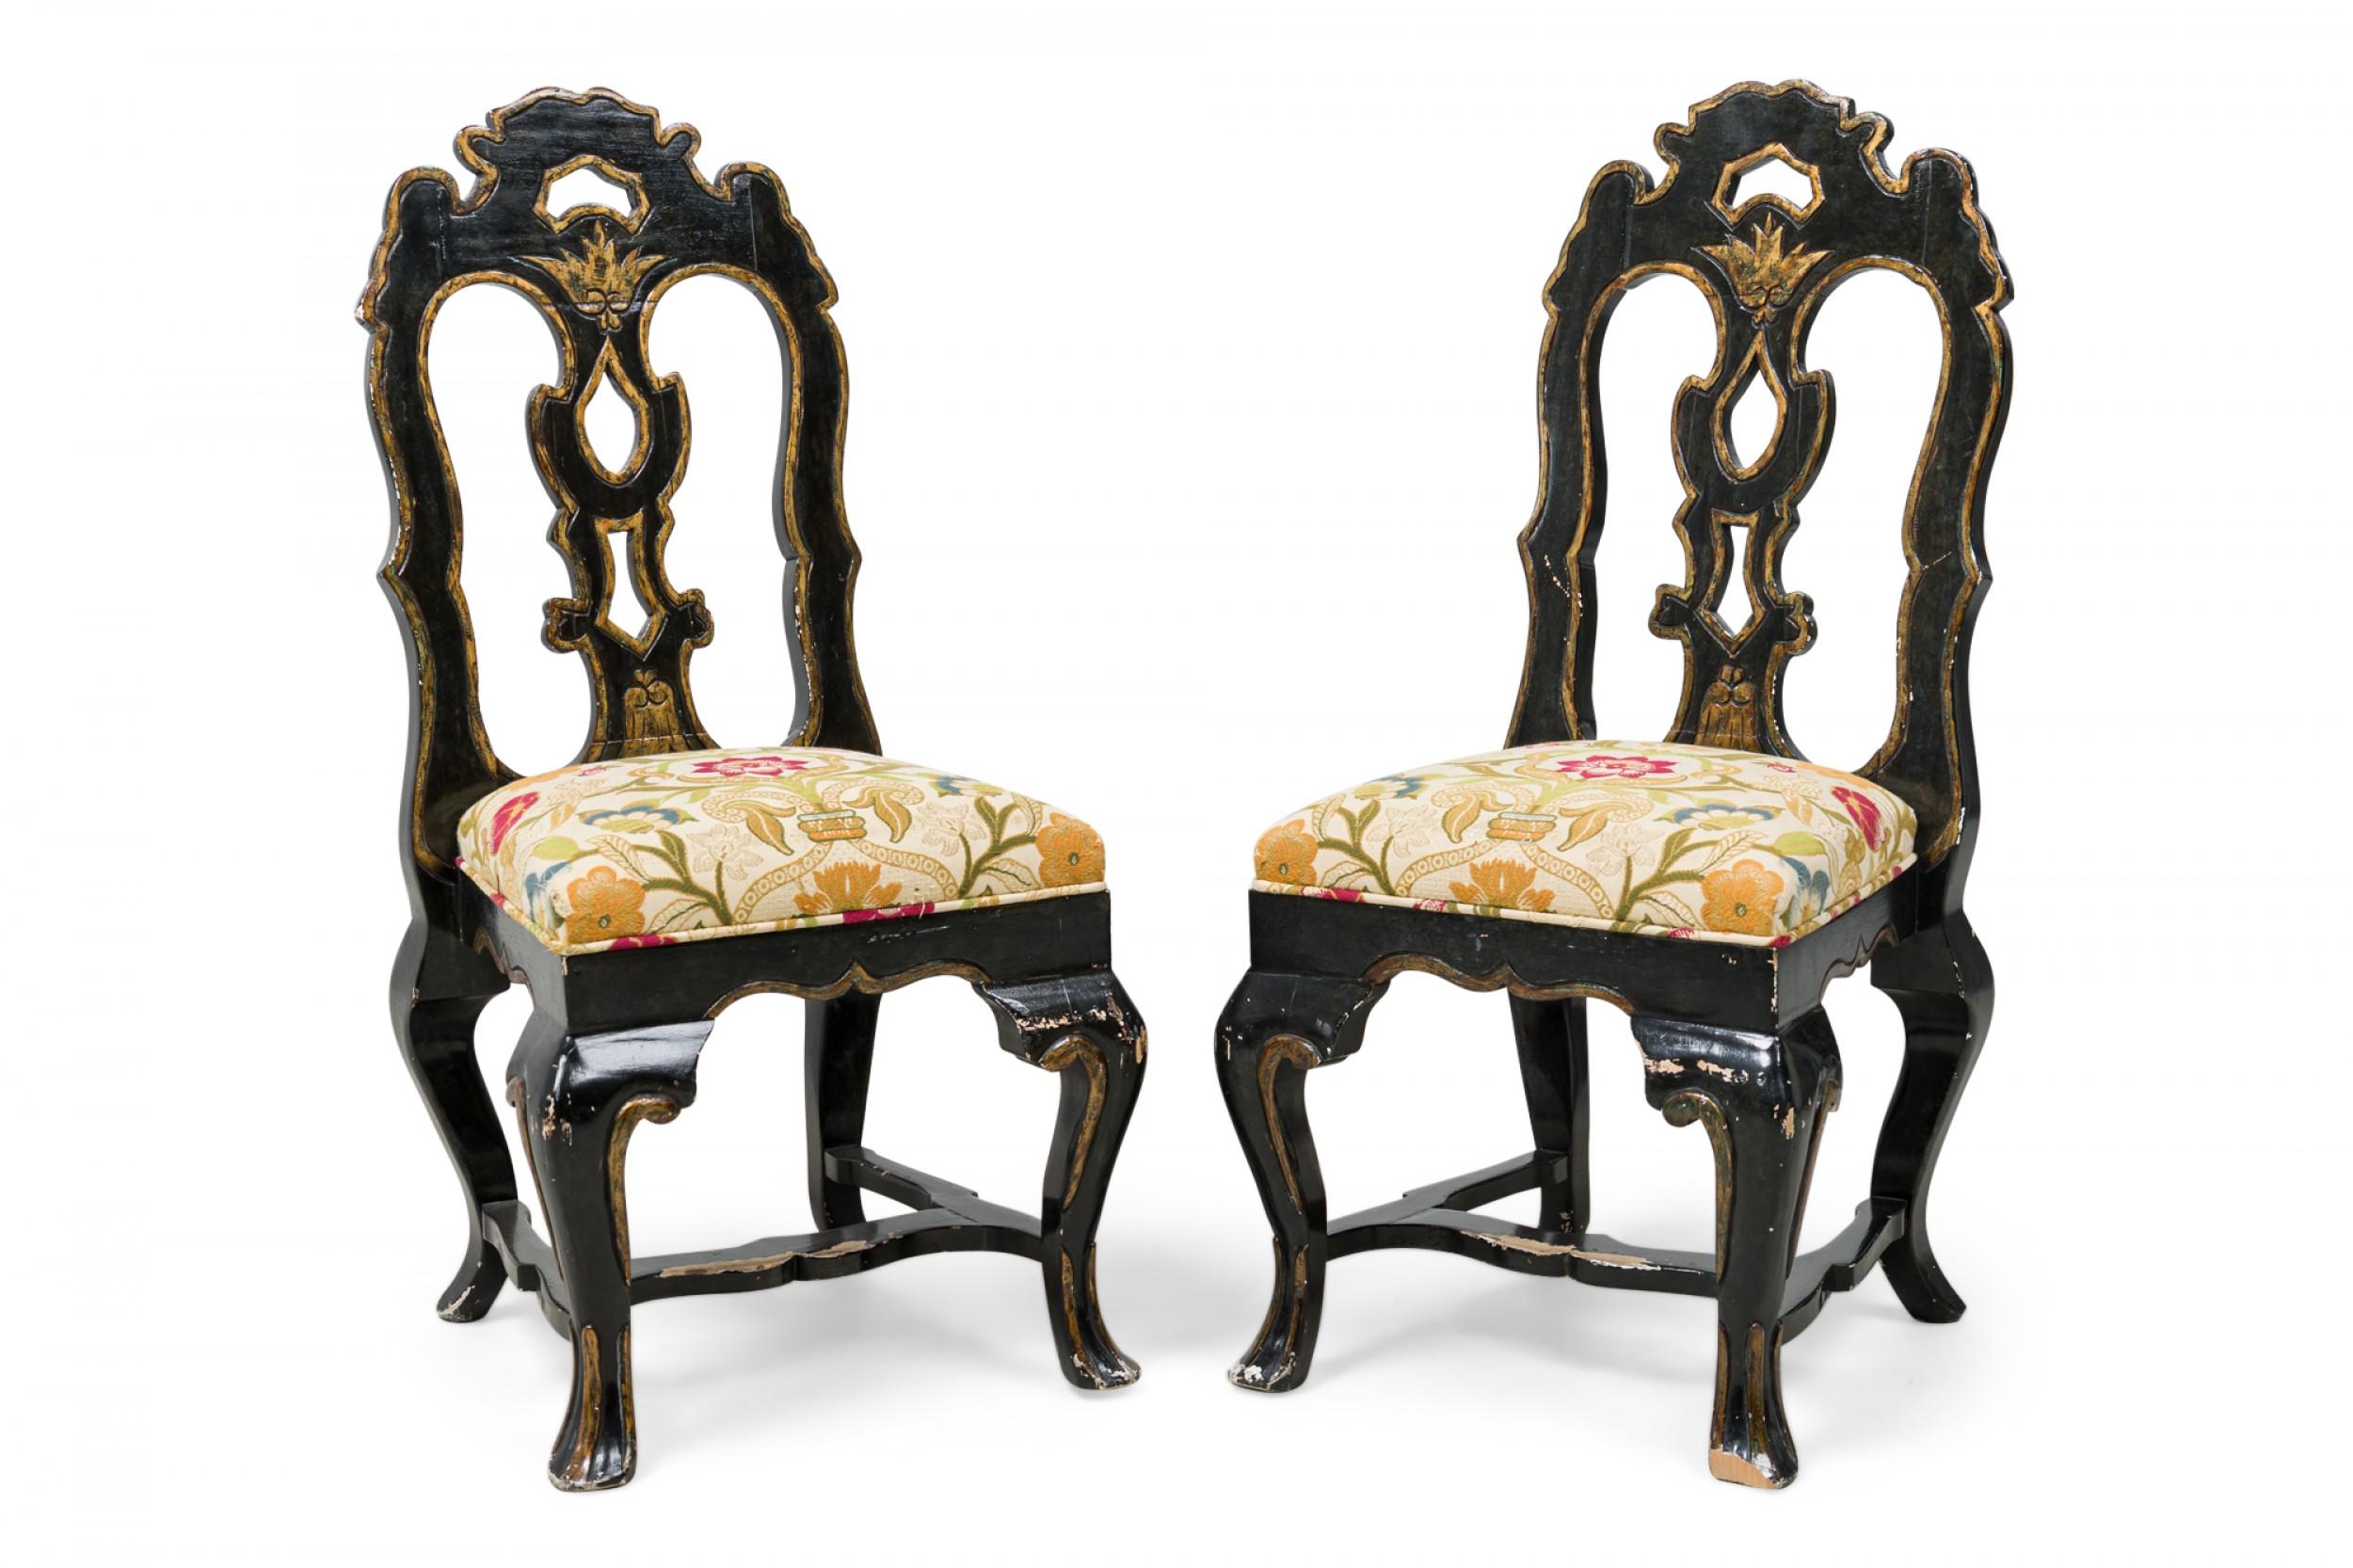 Ensemble de 6 chaises de salle à manger / chaises d'appoint en bois doré noir de style rococo portugais (20e siècle), comprenant une structure en forme avec un dossier aplati et ajouré, un dosseret sculpté, une assise rembourrée garnie d'un tissu à